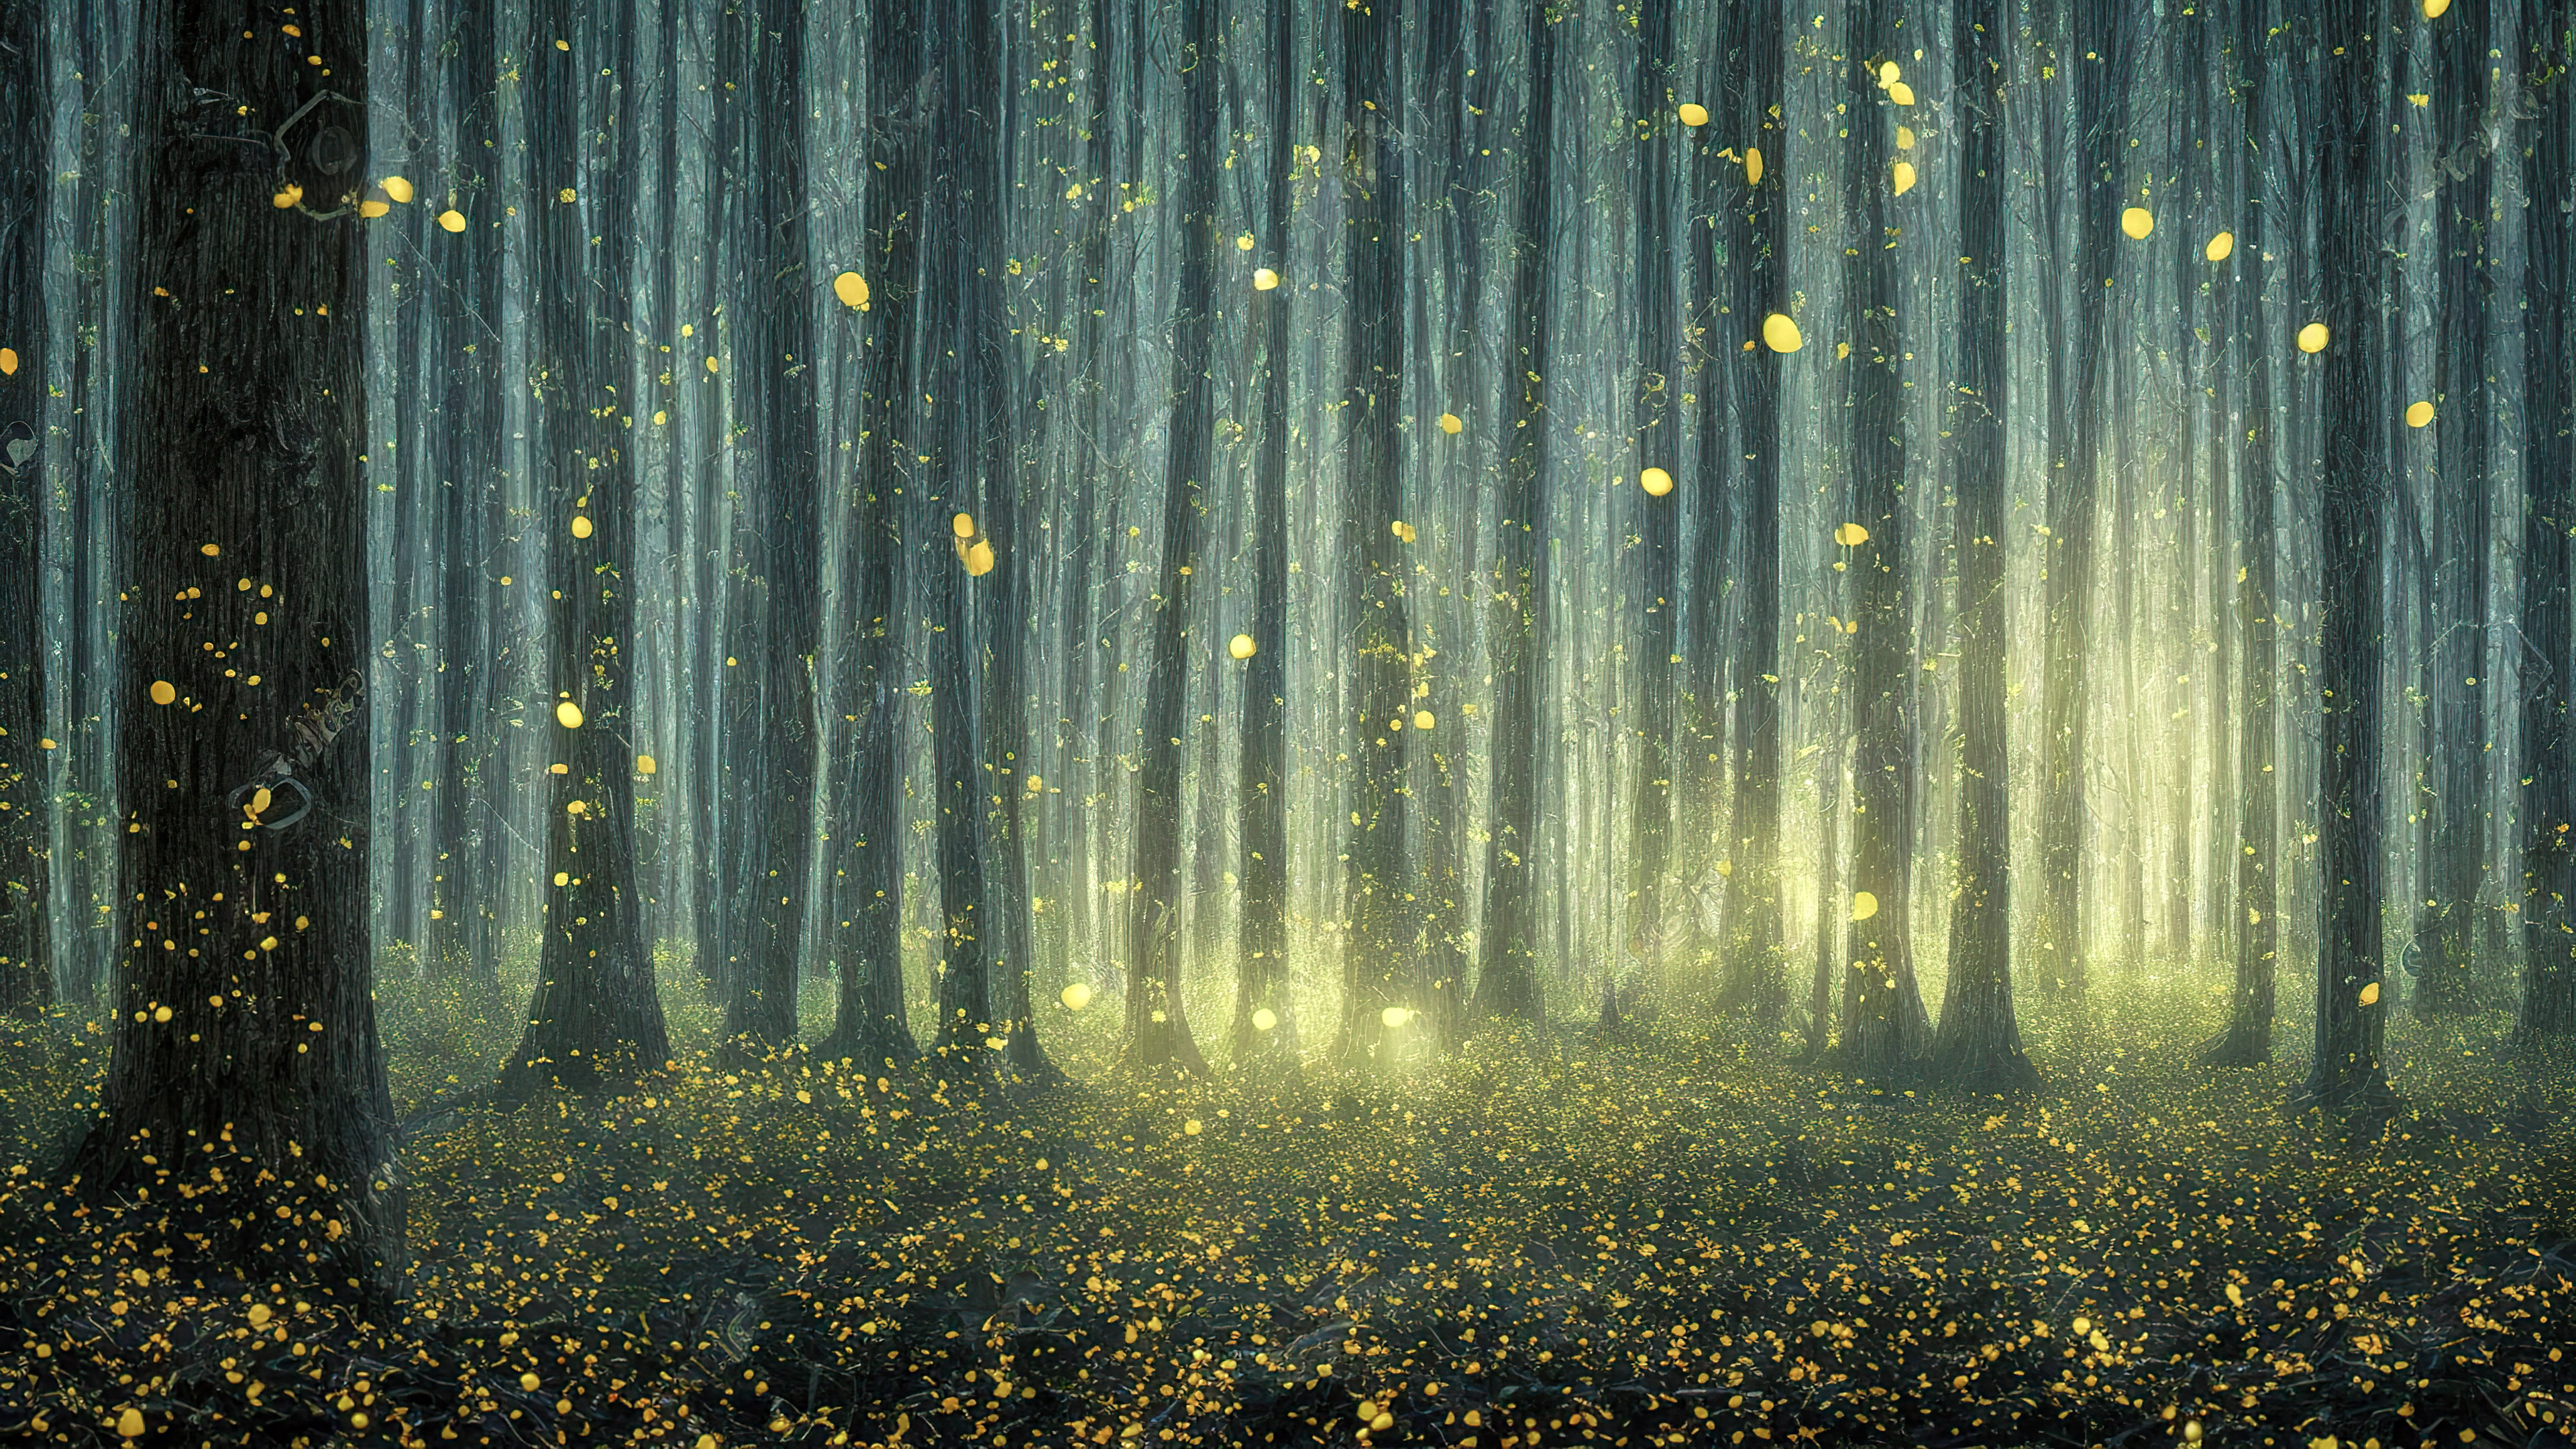 Découvrez le charme de nos belles images de fond d'écran nature, présentant une forêt magique illuminée par la douce lueur des lucioles lors d'une chaude soirée d'été.